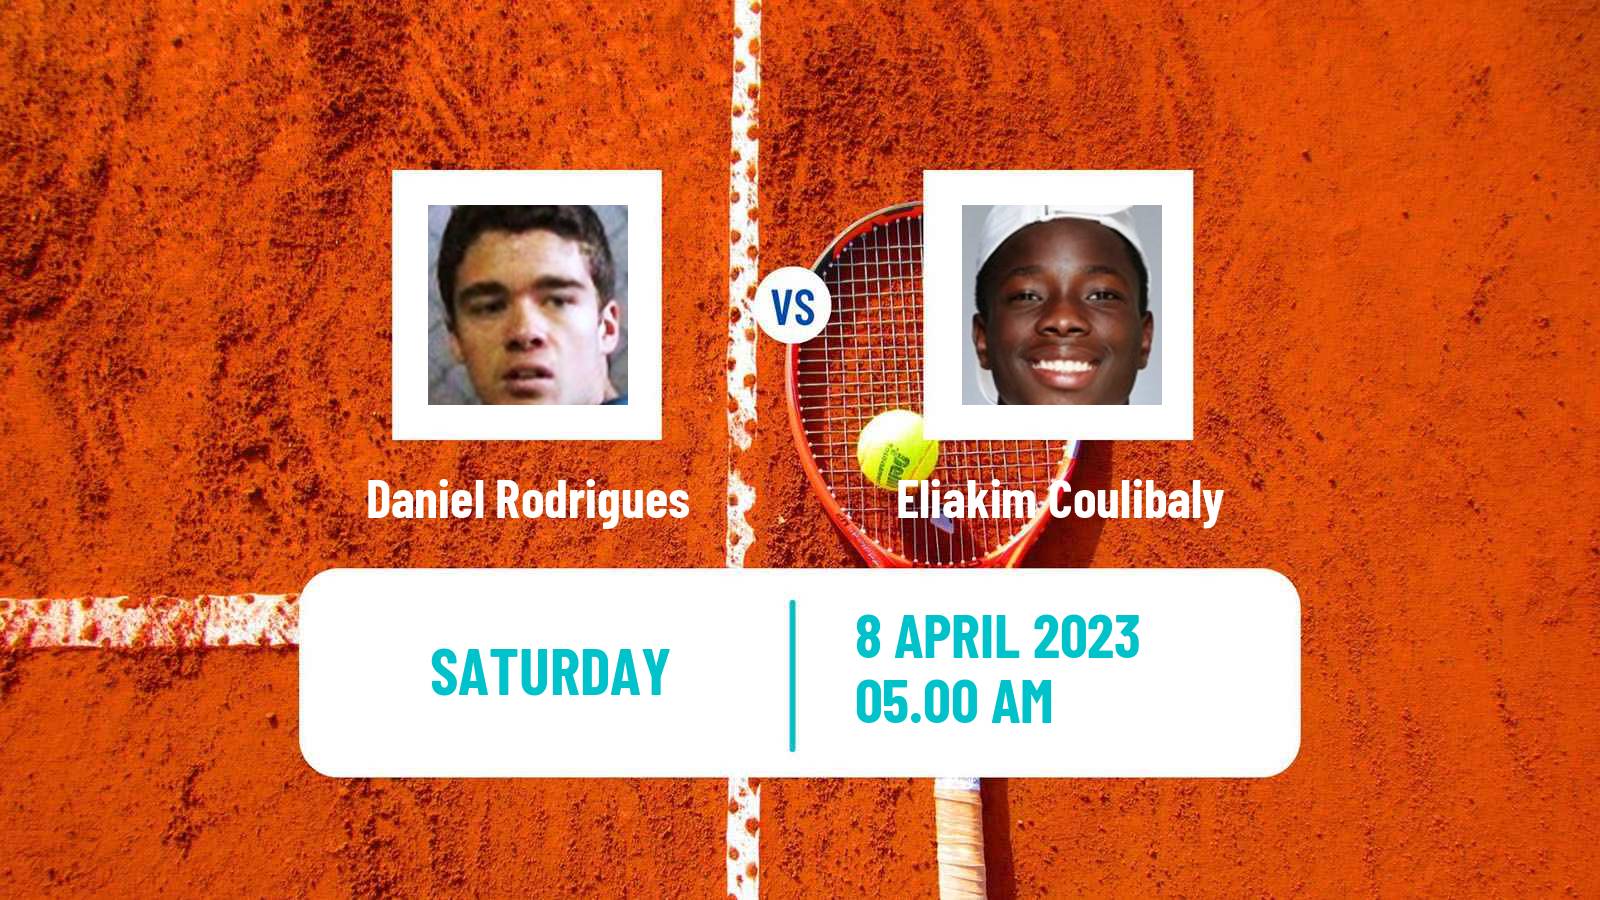 Tennis ITF Tournaments Daniel Rodrigues - Eliakim Coulibaly